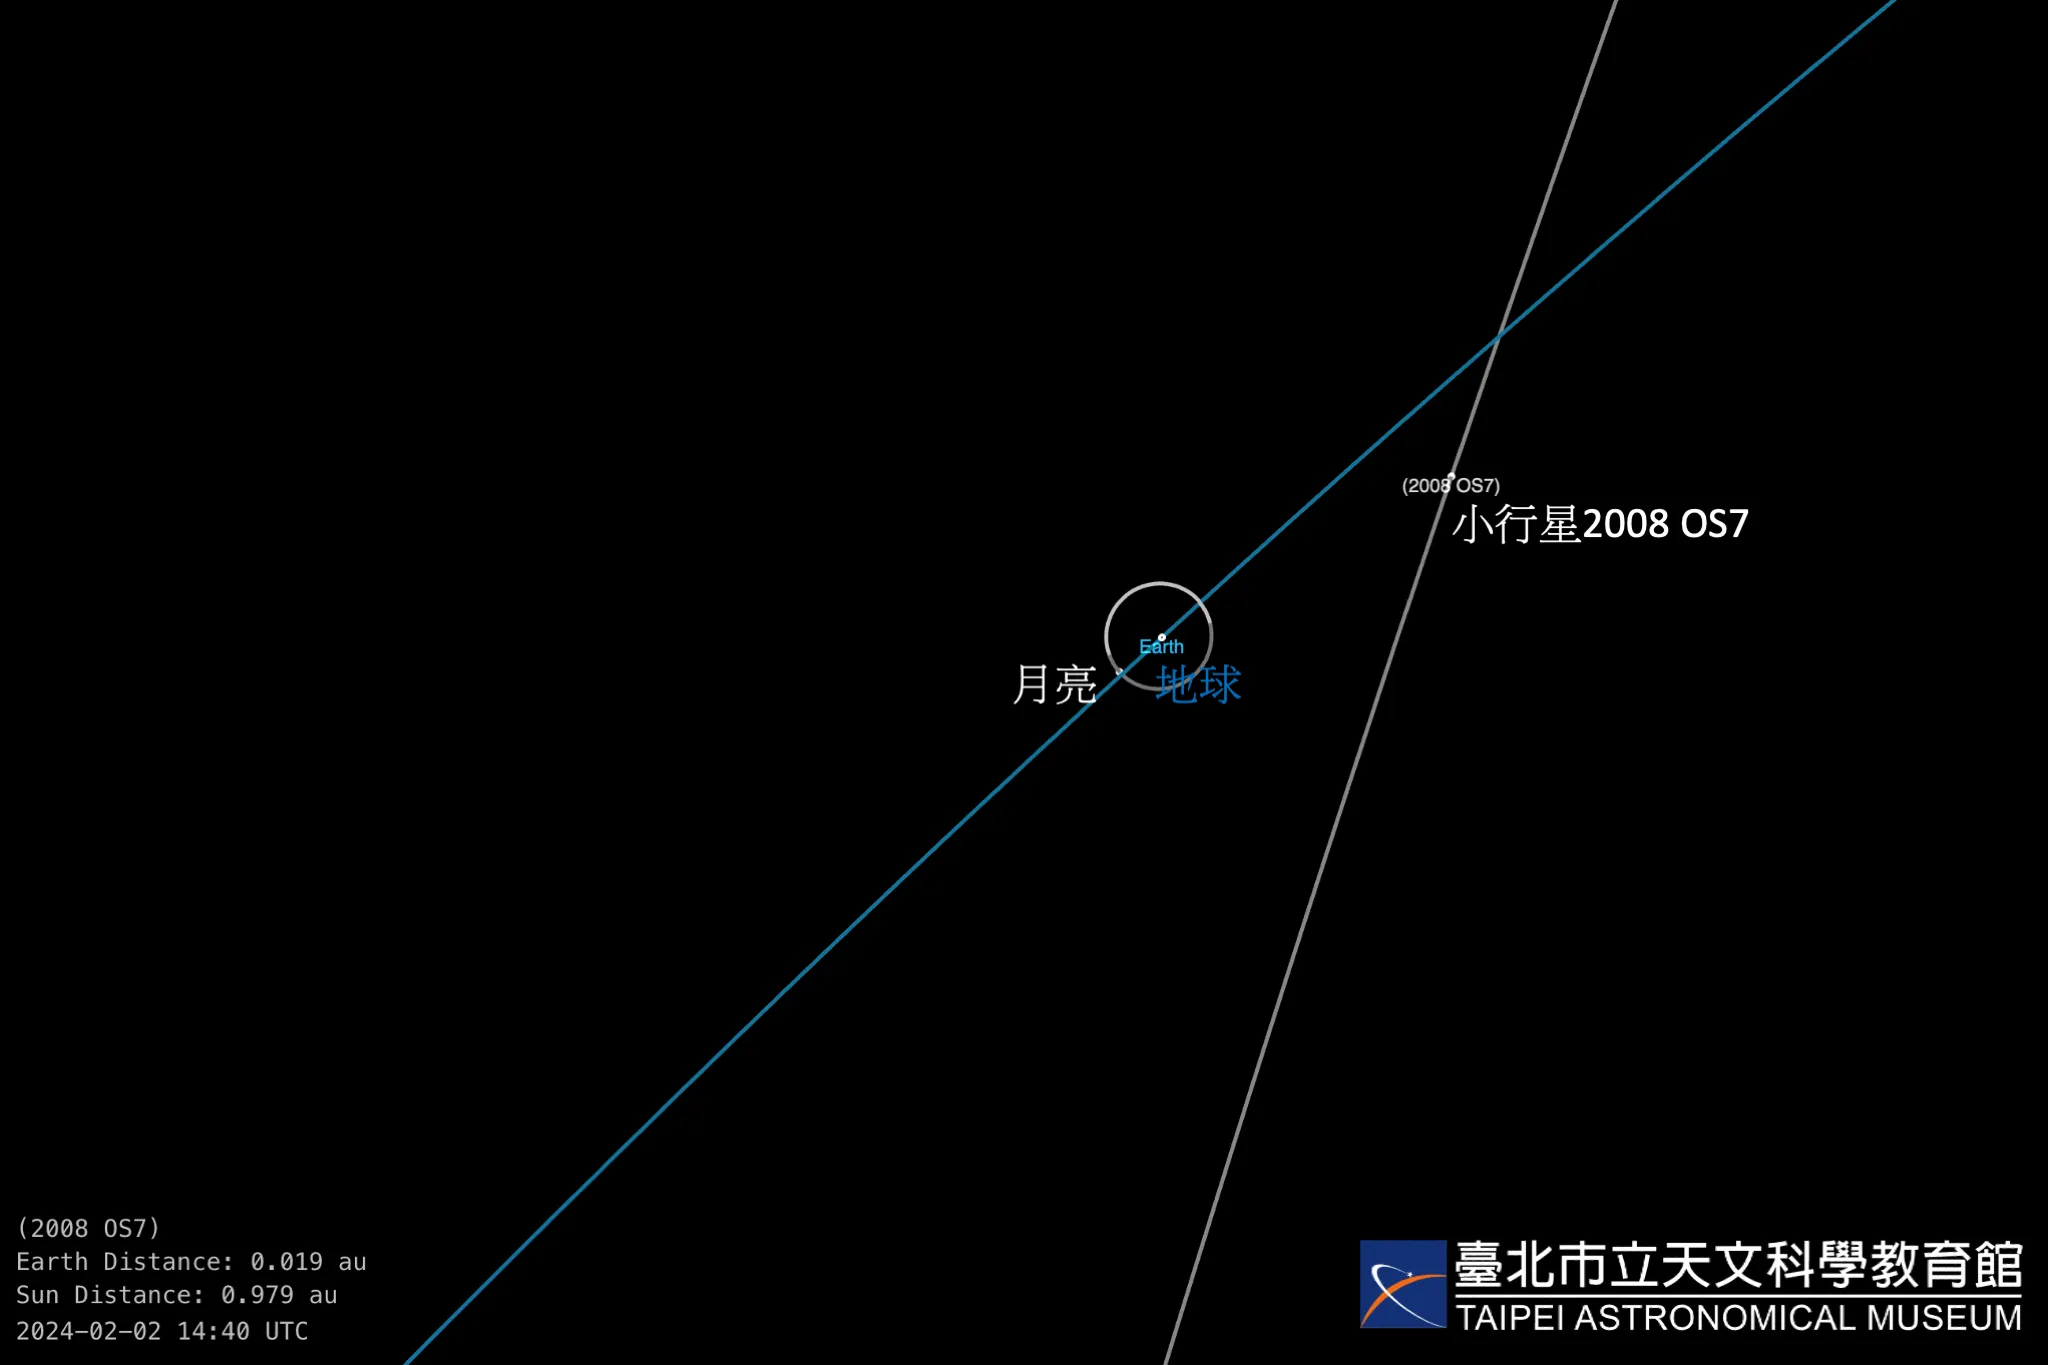 小行星2008 OS7在2024年2月2日晚间22时40分左右过近地点。此图标示出了届时地球轨道，月球轨道、以及小行星轨道的相对位置。